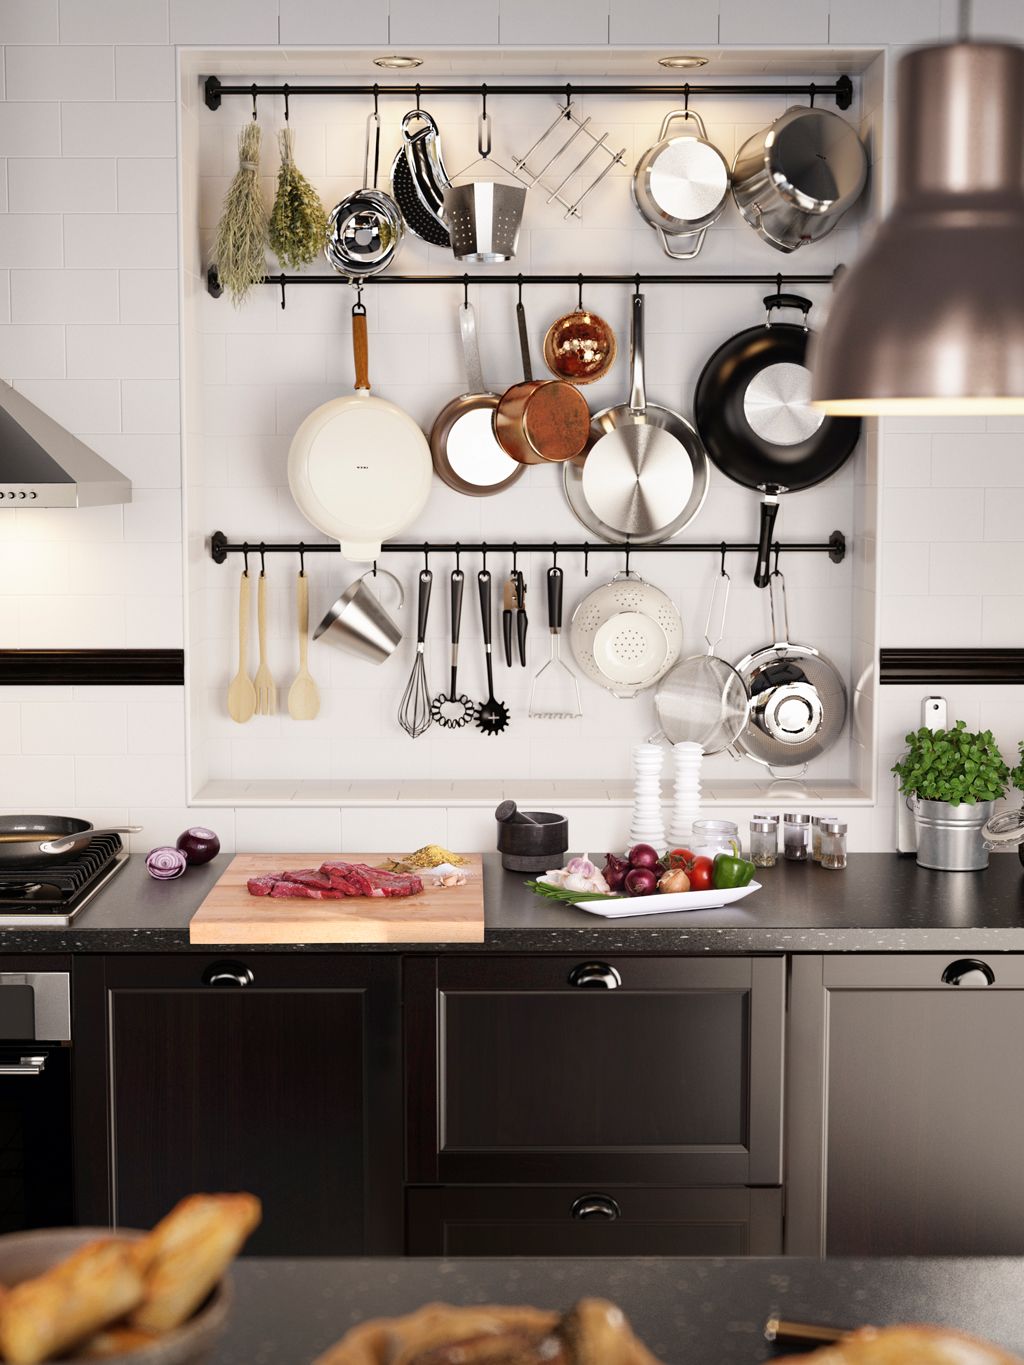 Orden y limpieza en tu cocina - Expertos en Ordenación